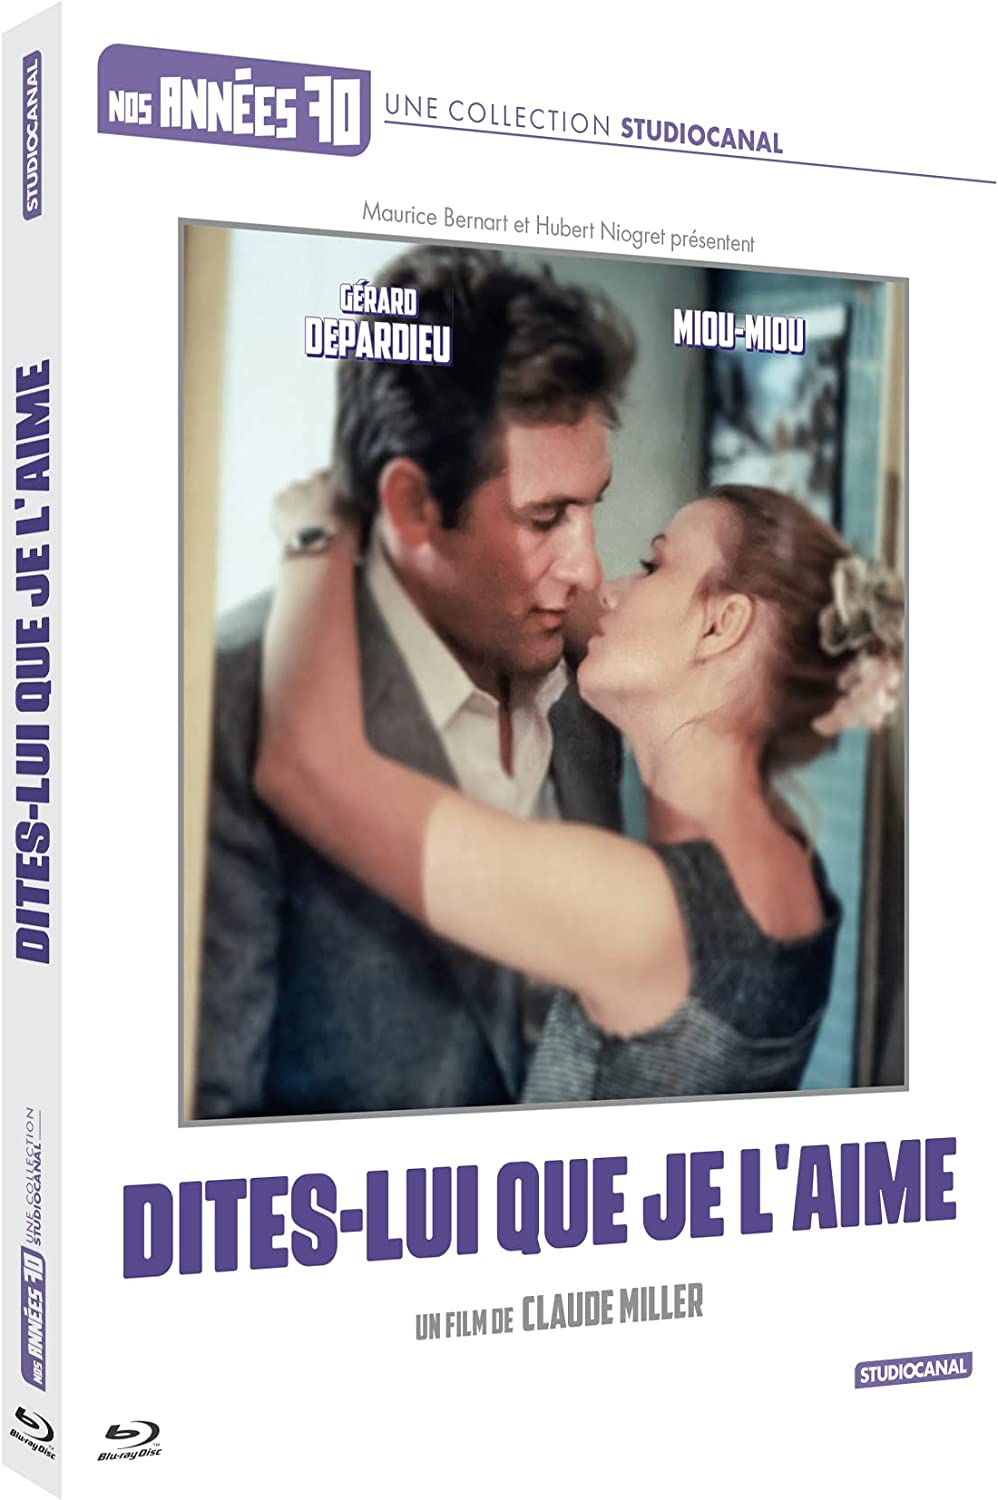 Dites-Lui Que Je l'aime (1977) de Claude Miller - front cover